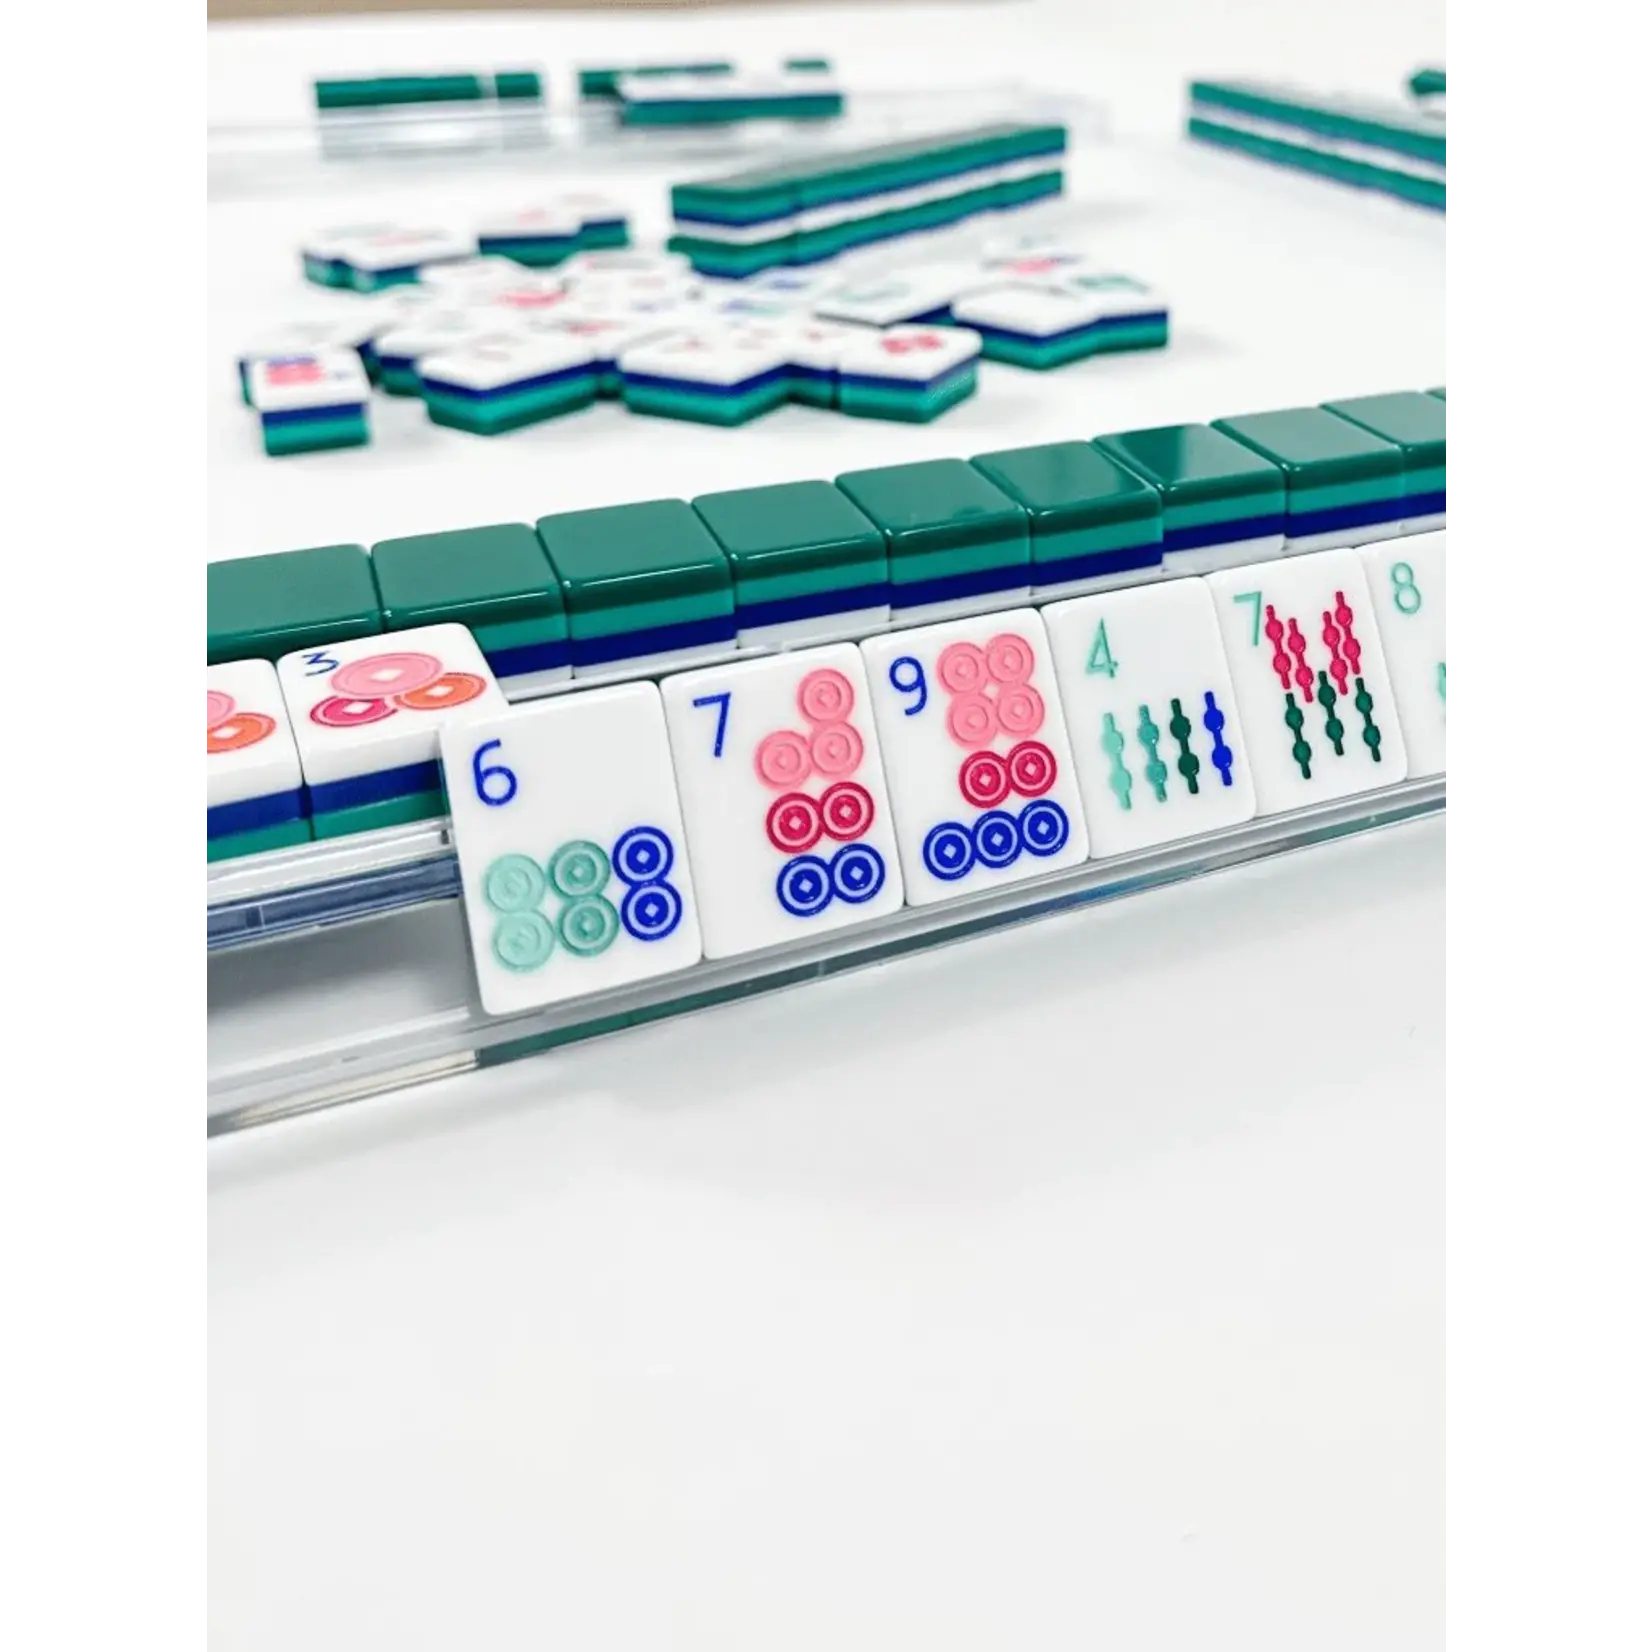 Oh My Mahjong Shangri-La Mahjong Tiles